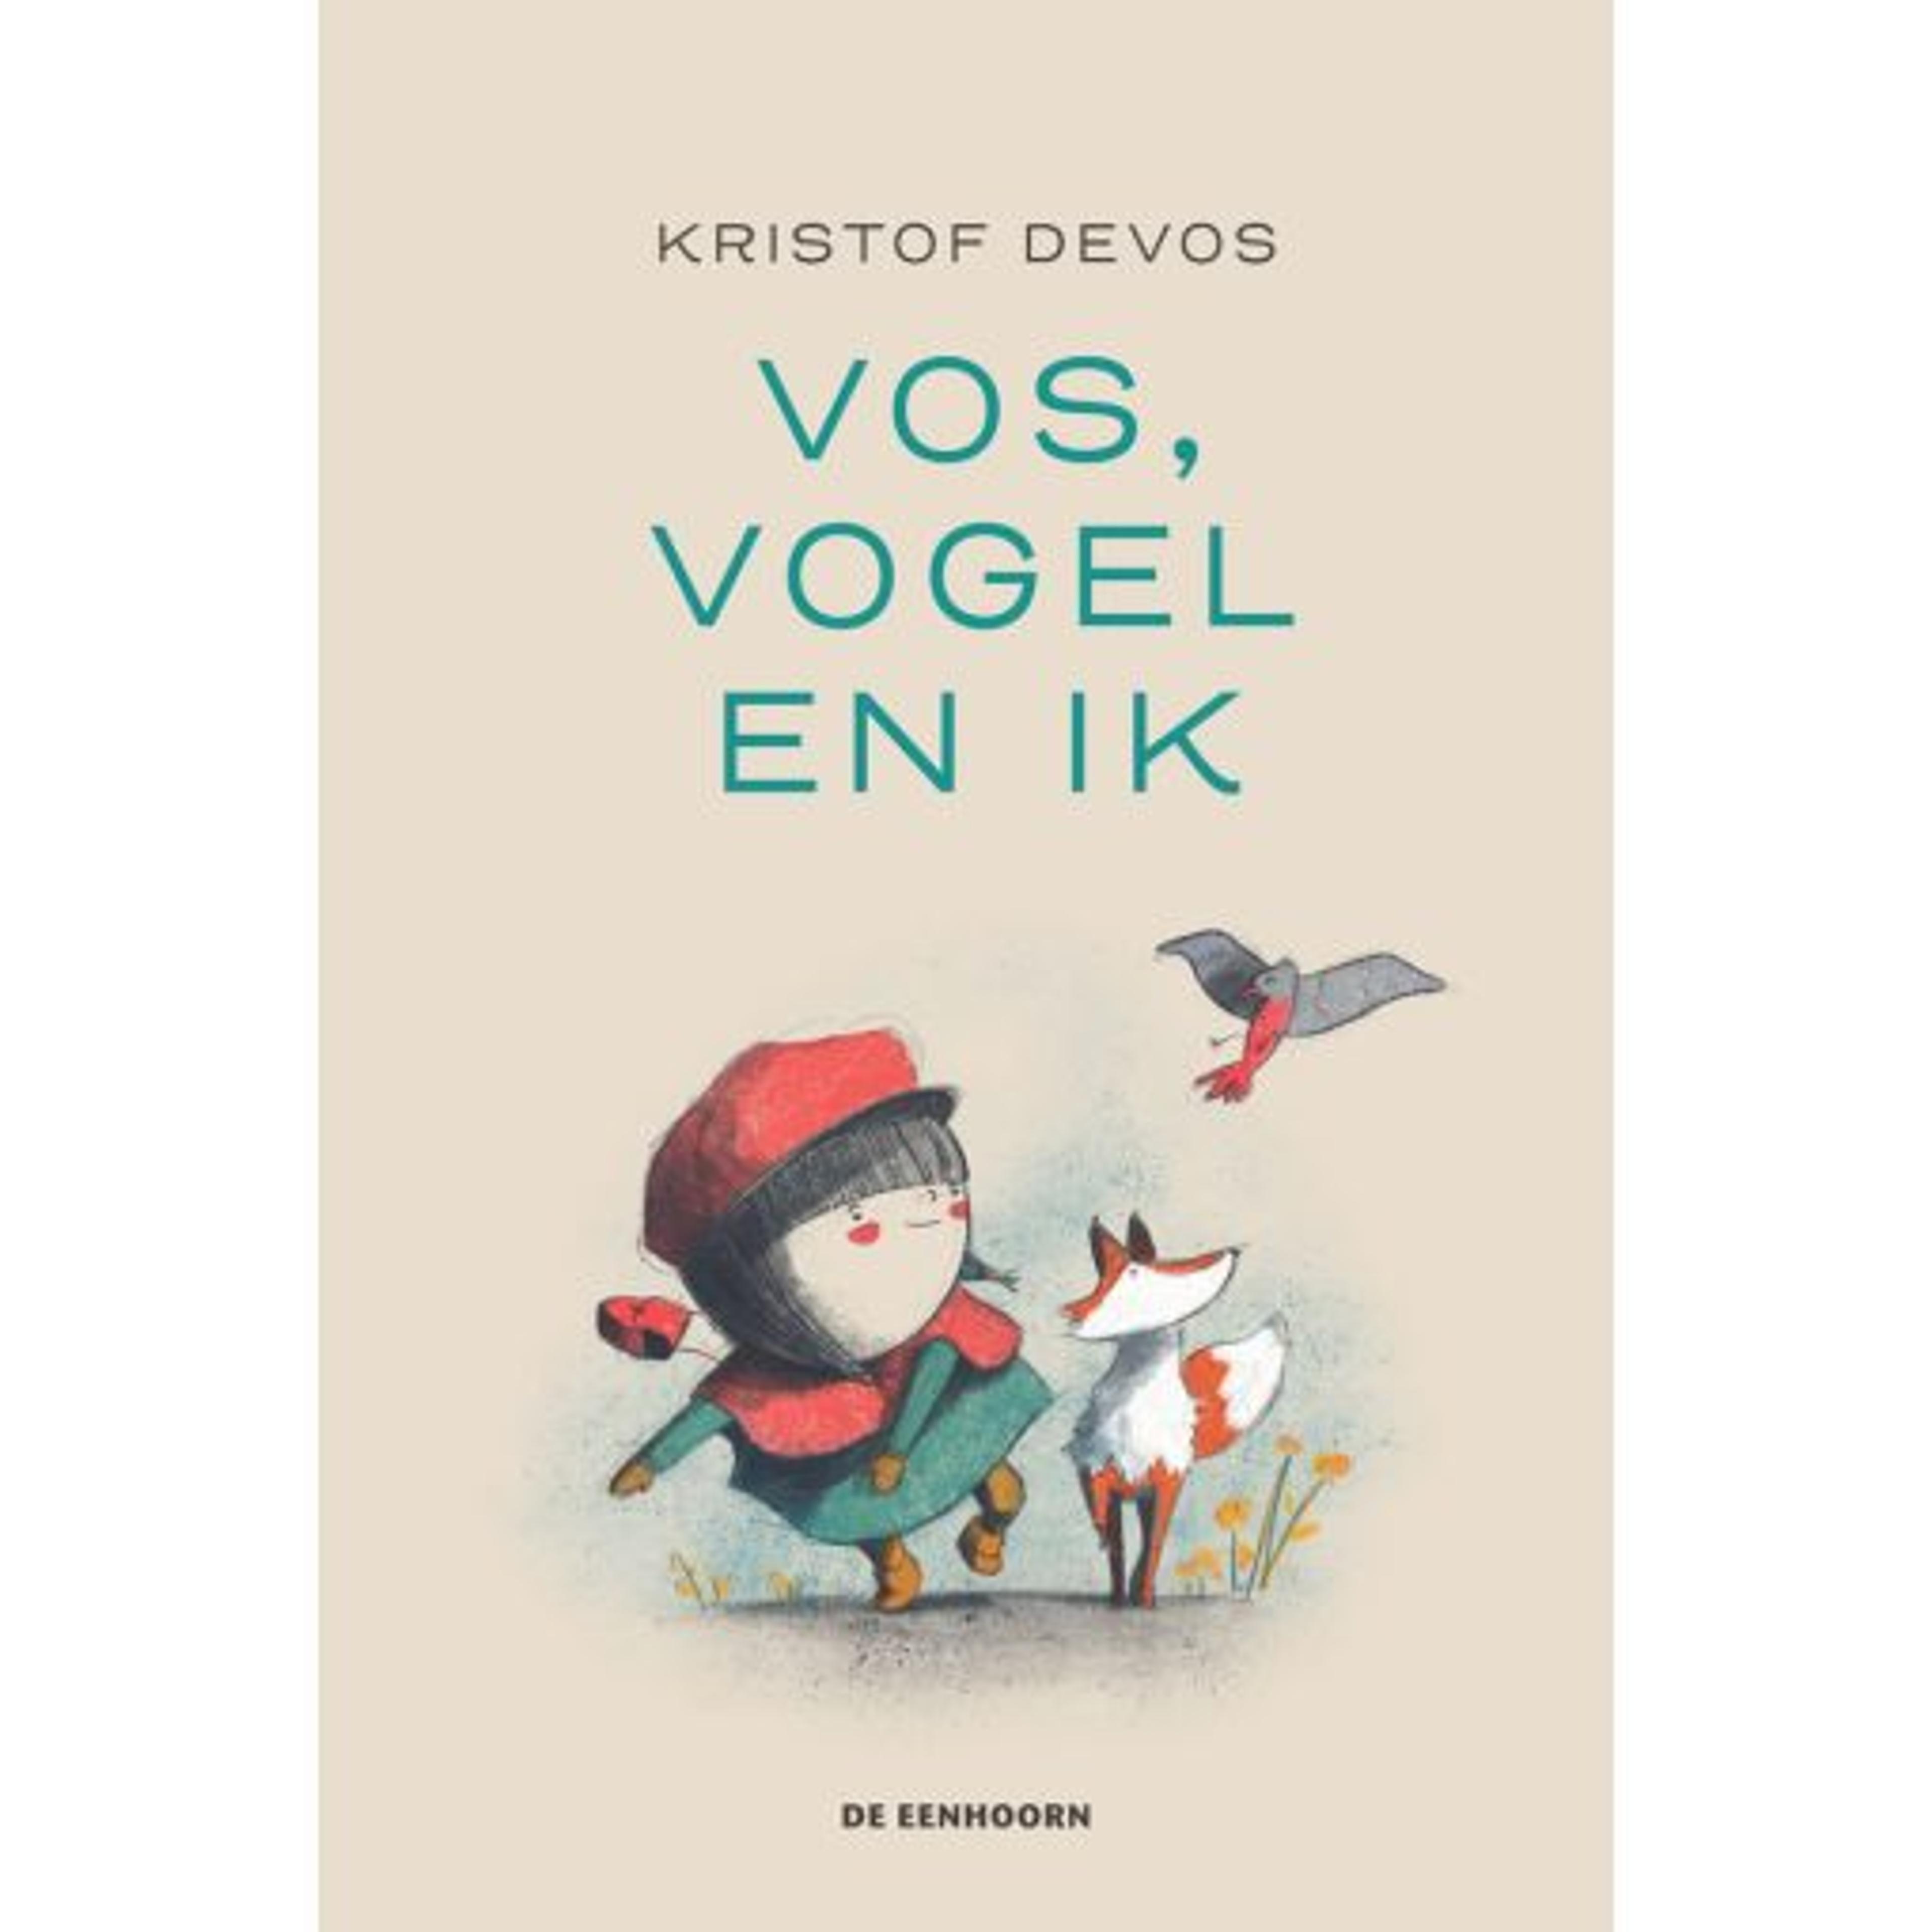 Cover for Vos, vogel en ik (Fox, Bird and me)